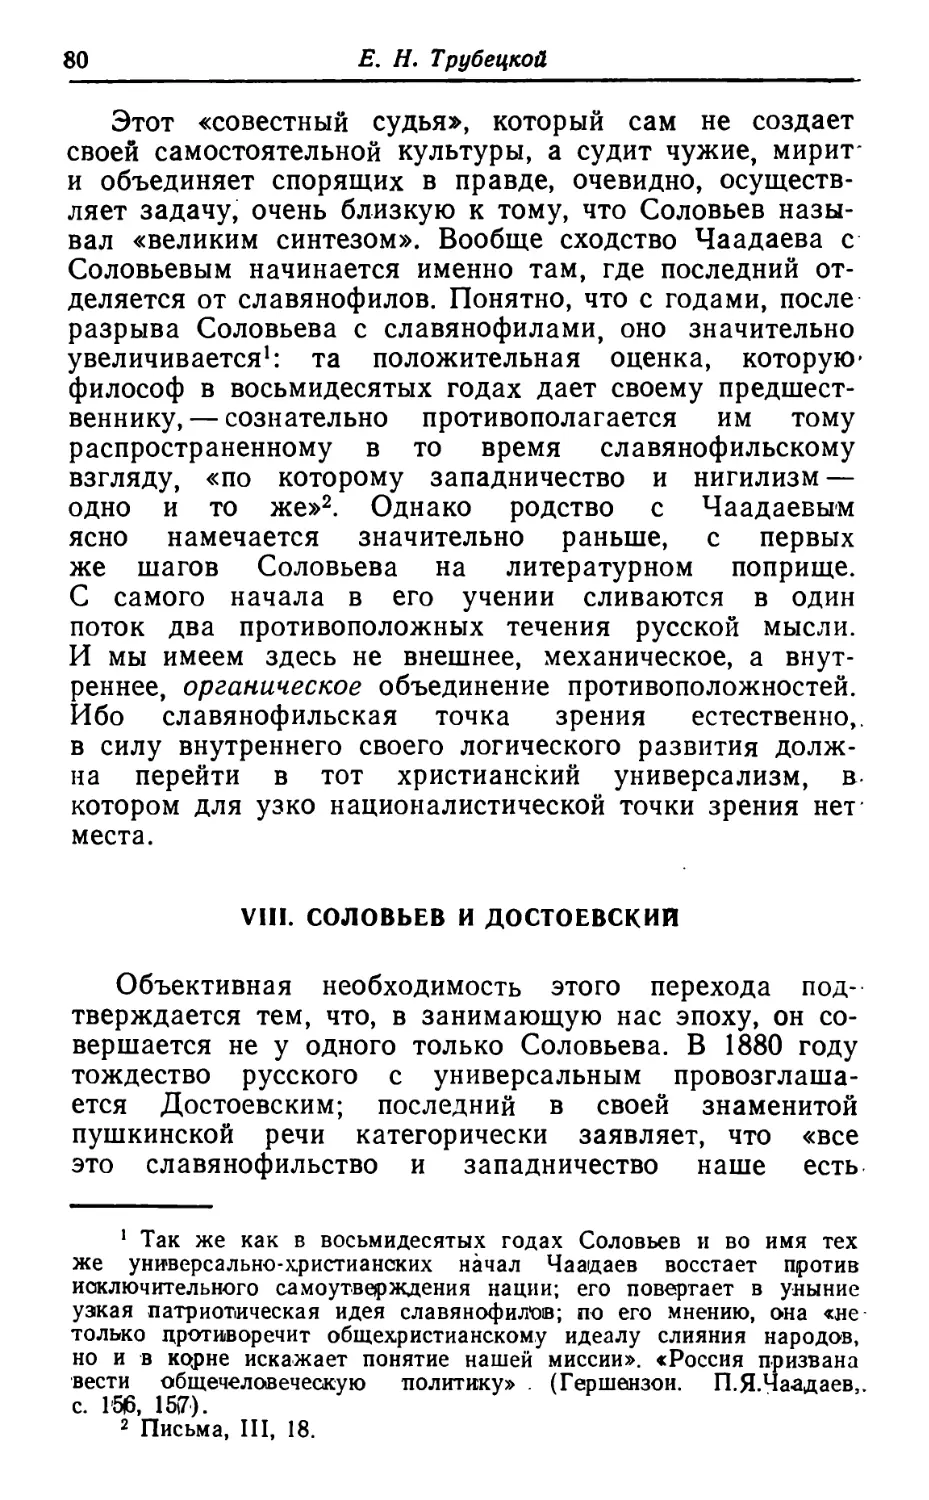 VIII. Соловьев и Достоевский